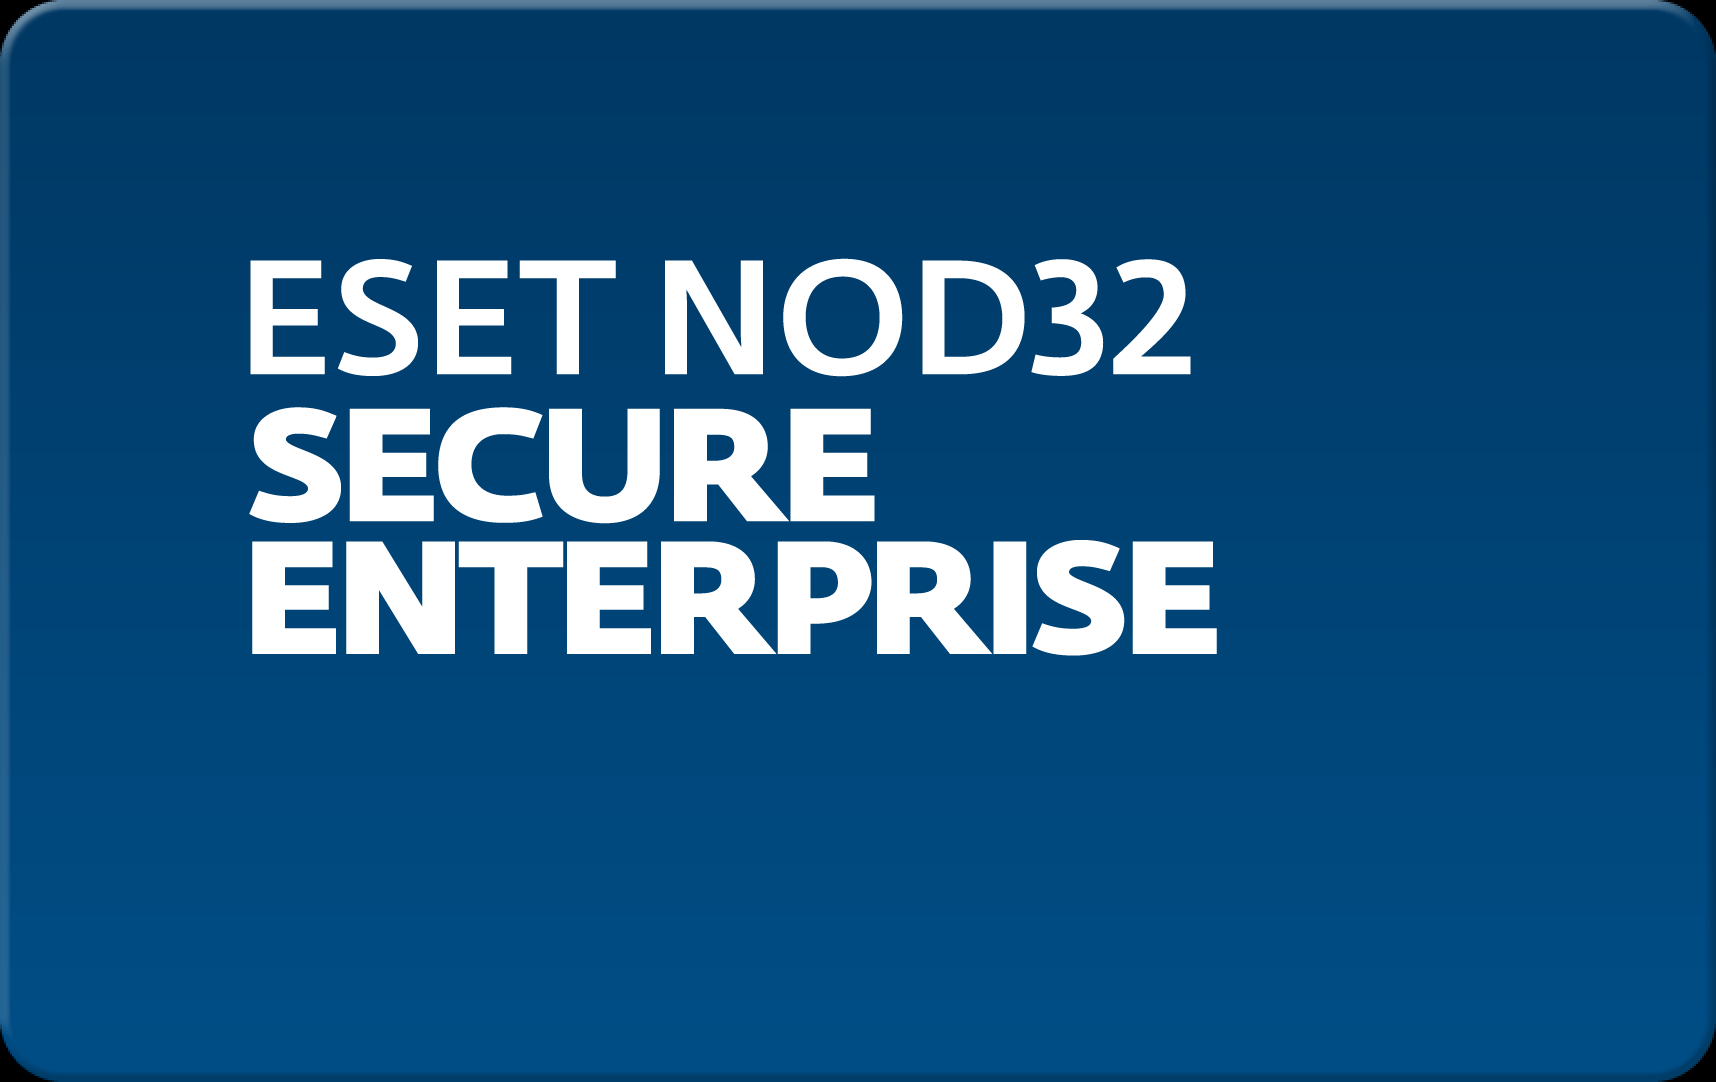        Eset NOD32 Secure Enterprise  148 